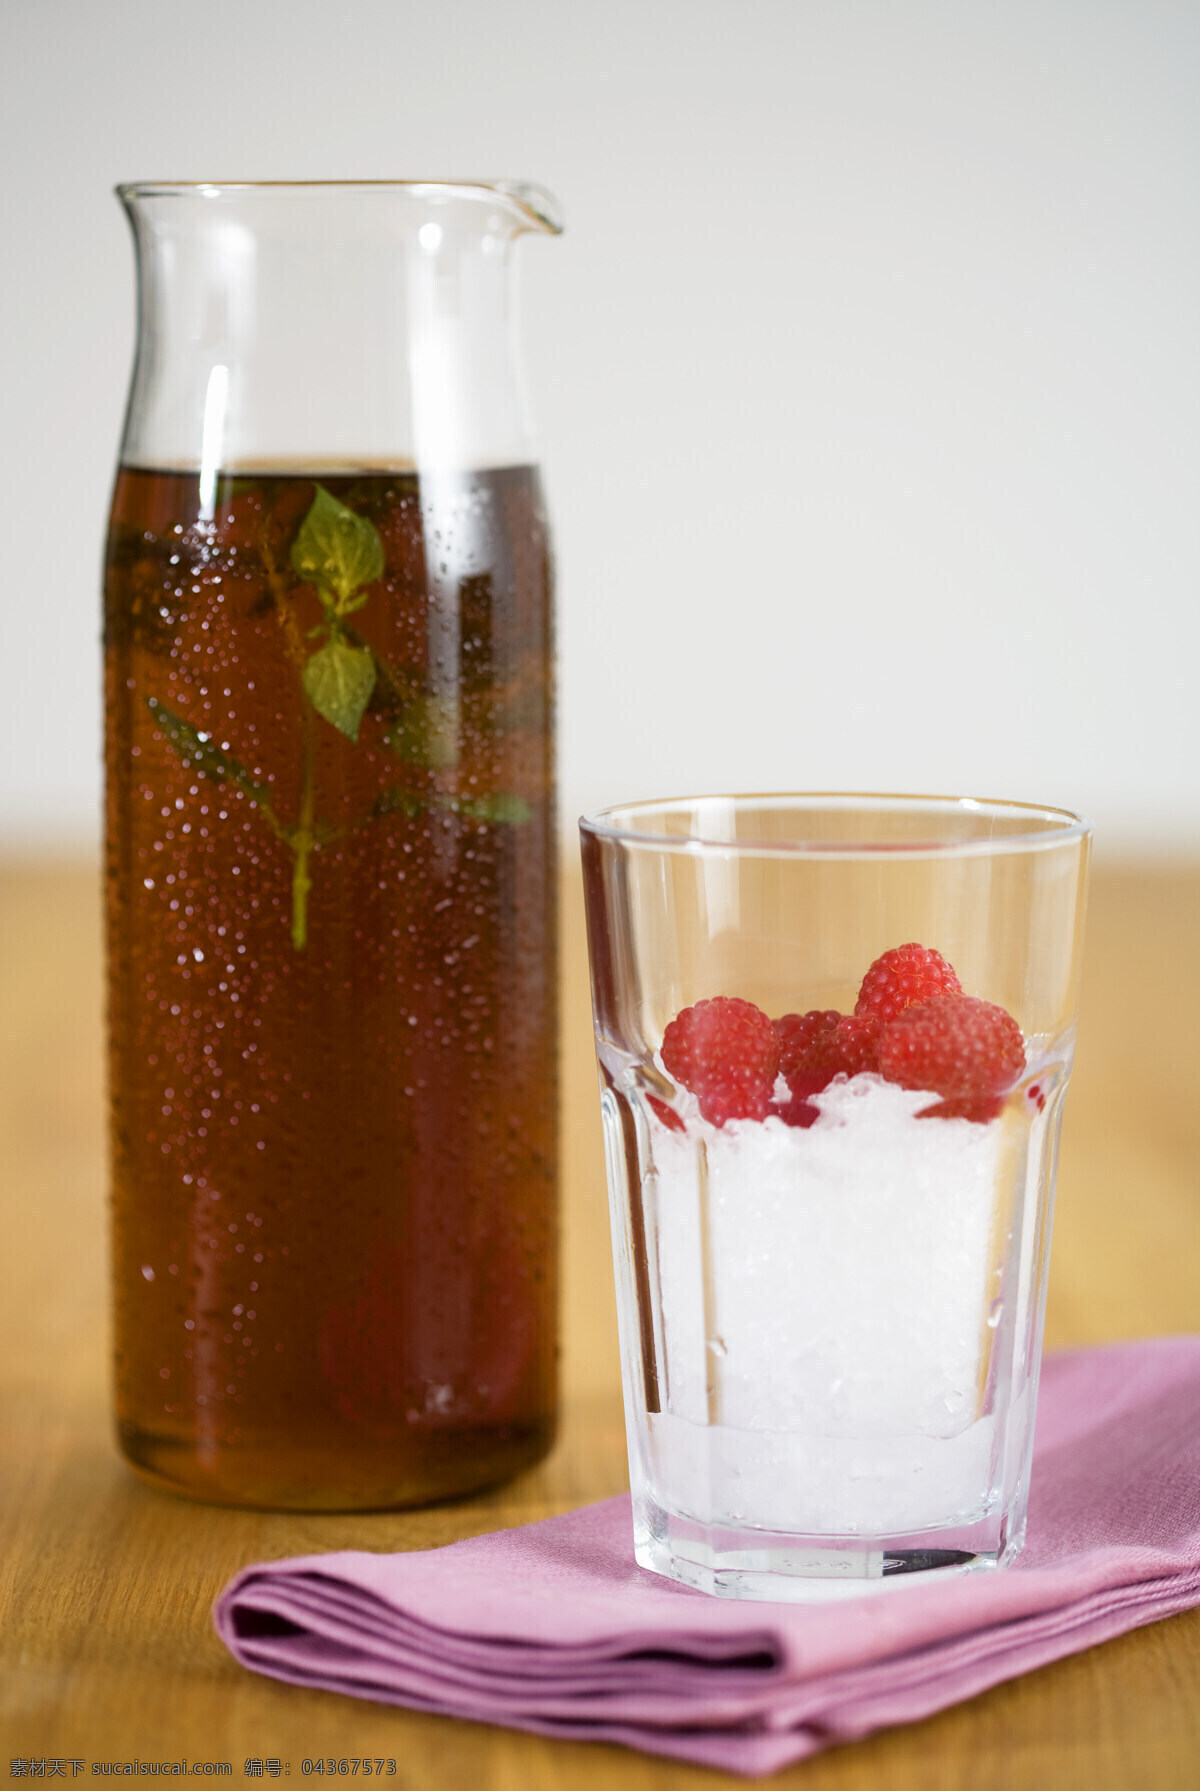 酸梅汁 酸梅 玻璃杯 冰块 红梅 品茶 红茶 茶文化 茶杯垫 木桌 健康生活 健康饮食 饮品 饮料酒水 餐饮美食